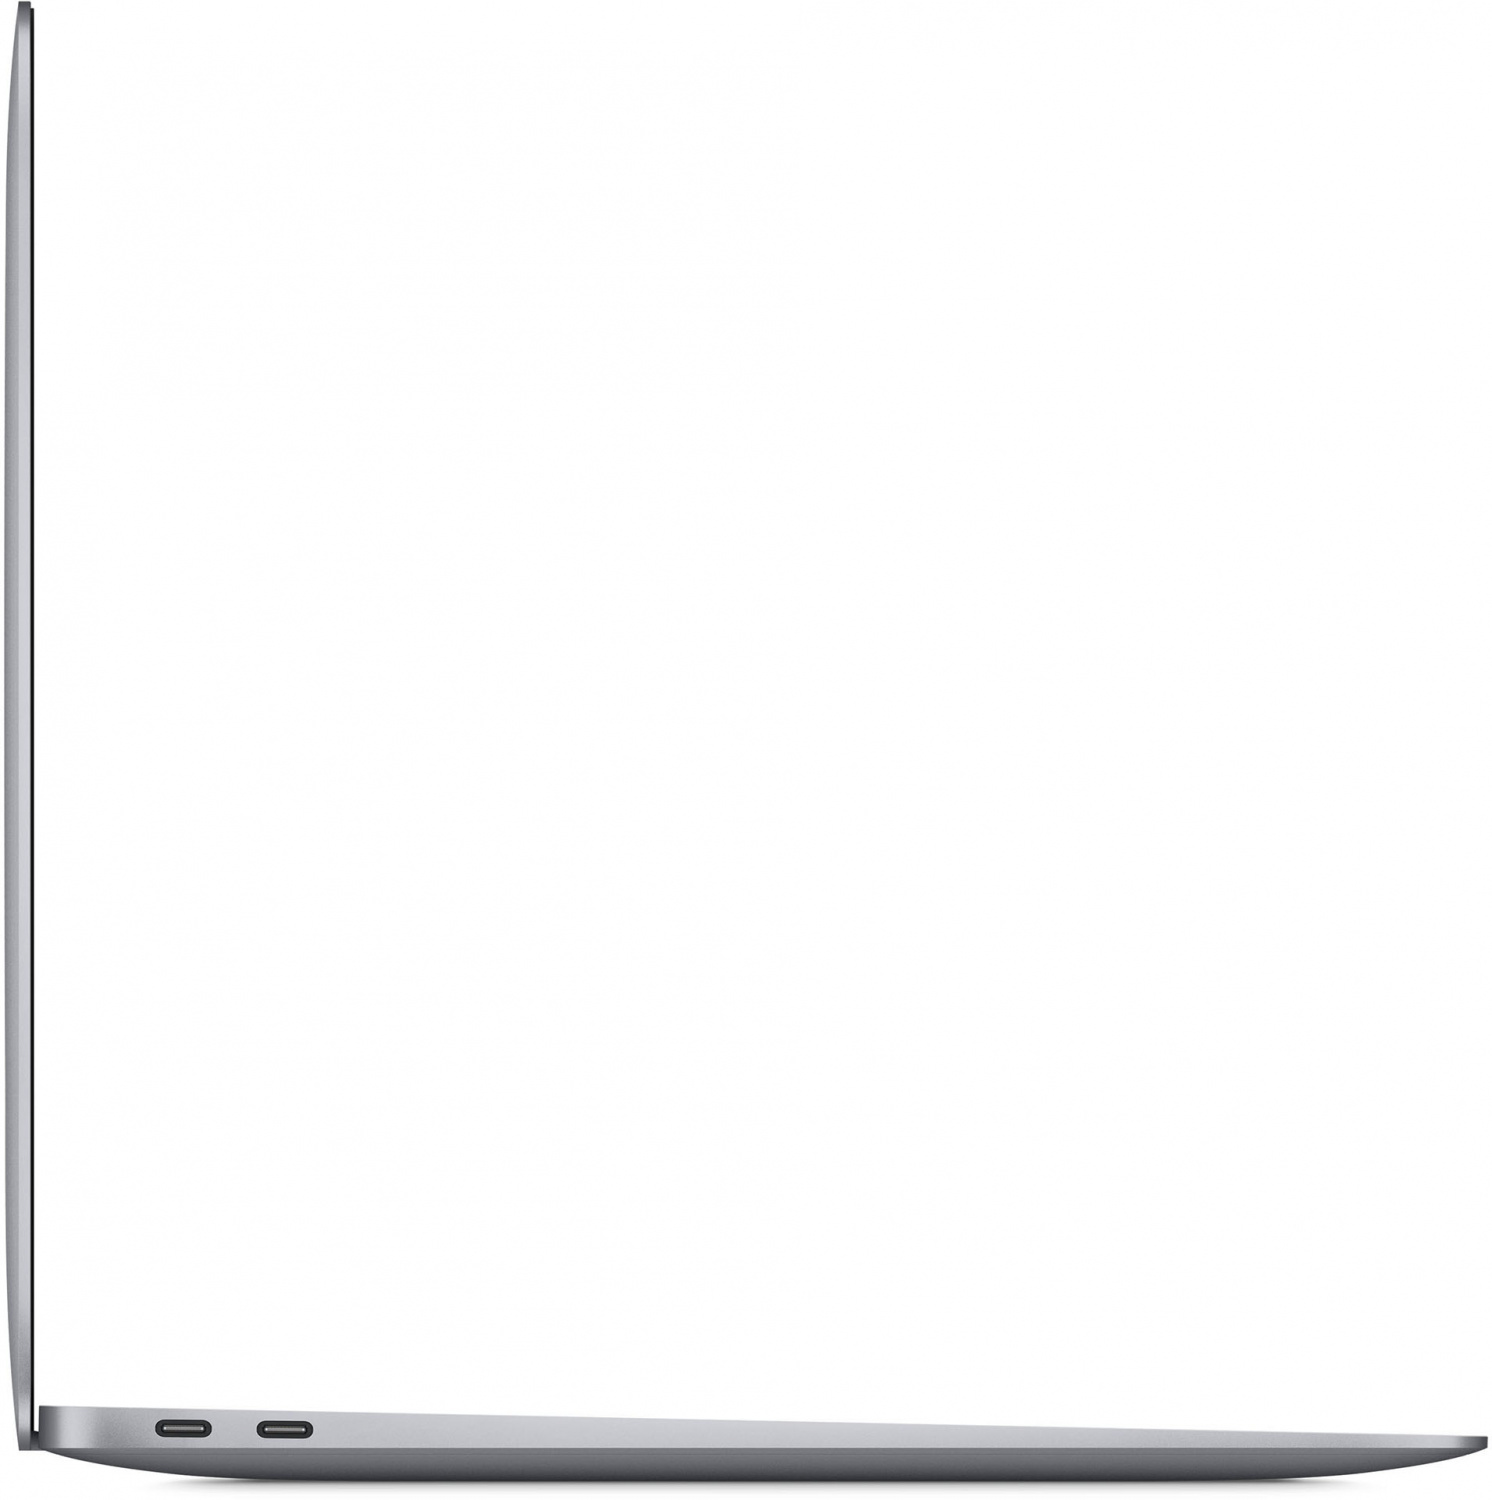 Купить ноутбук apple macbook air m1, 2020 8 гб, 256 гб ssd, серый космос (mgn63) Ноутбуки в официальном магазине Apple, Samsung, Xiaomi. iPixel.ru Купить, заказ, кредит, рассрочка, отзывы,  характеристики, цена,  фотографии, в подарок.